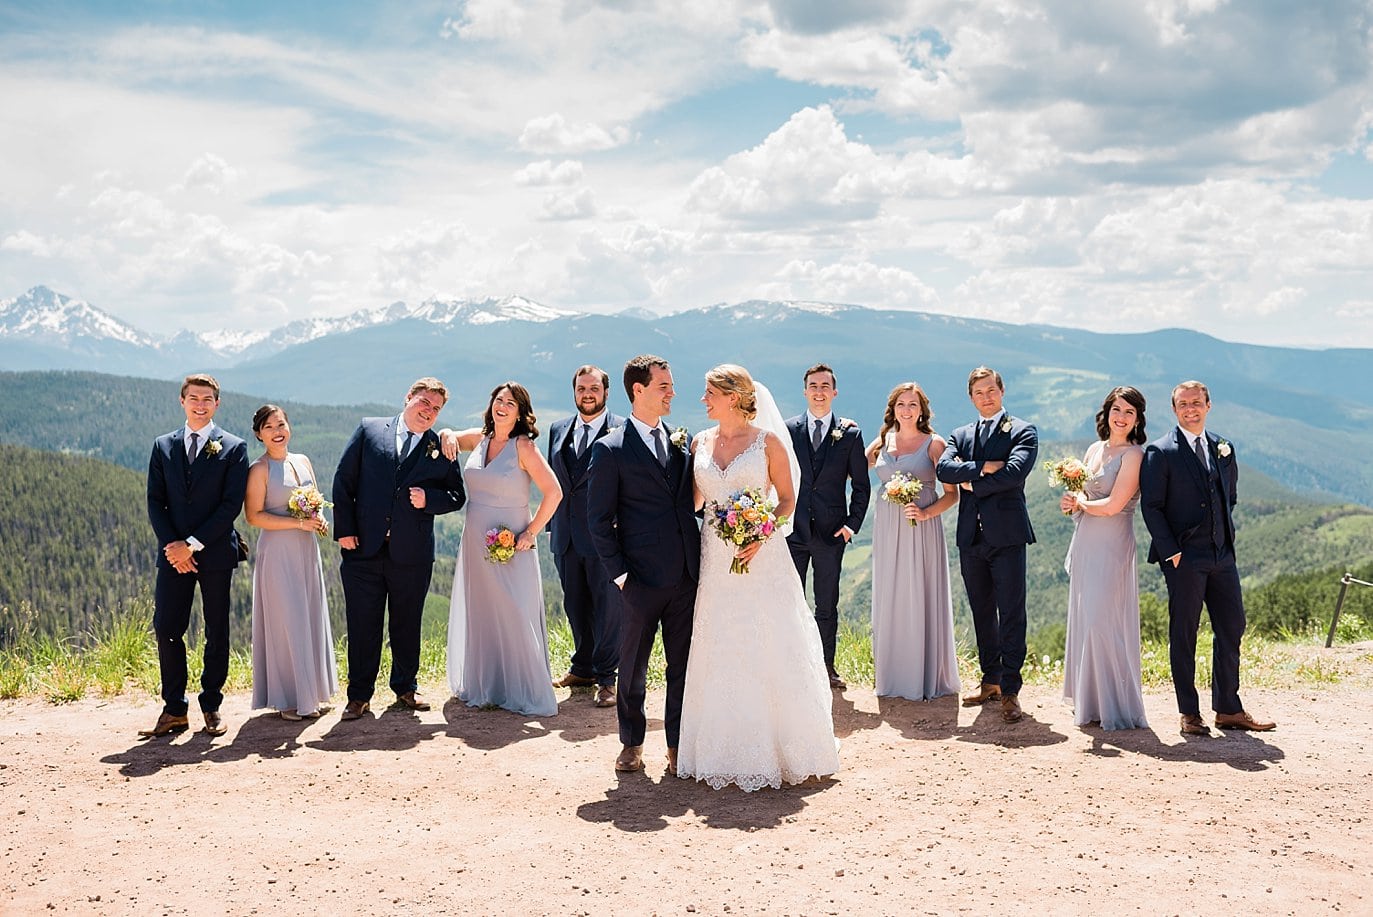 Vail Mountain wedding party photo